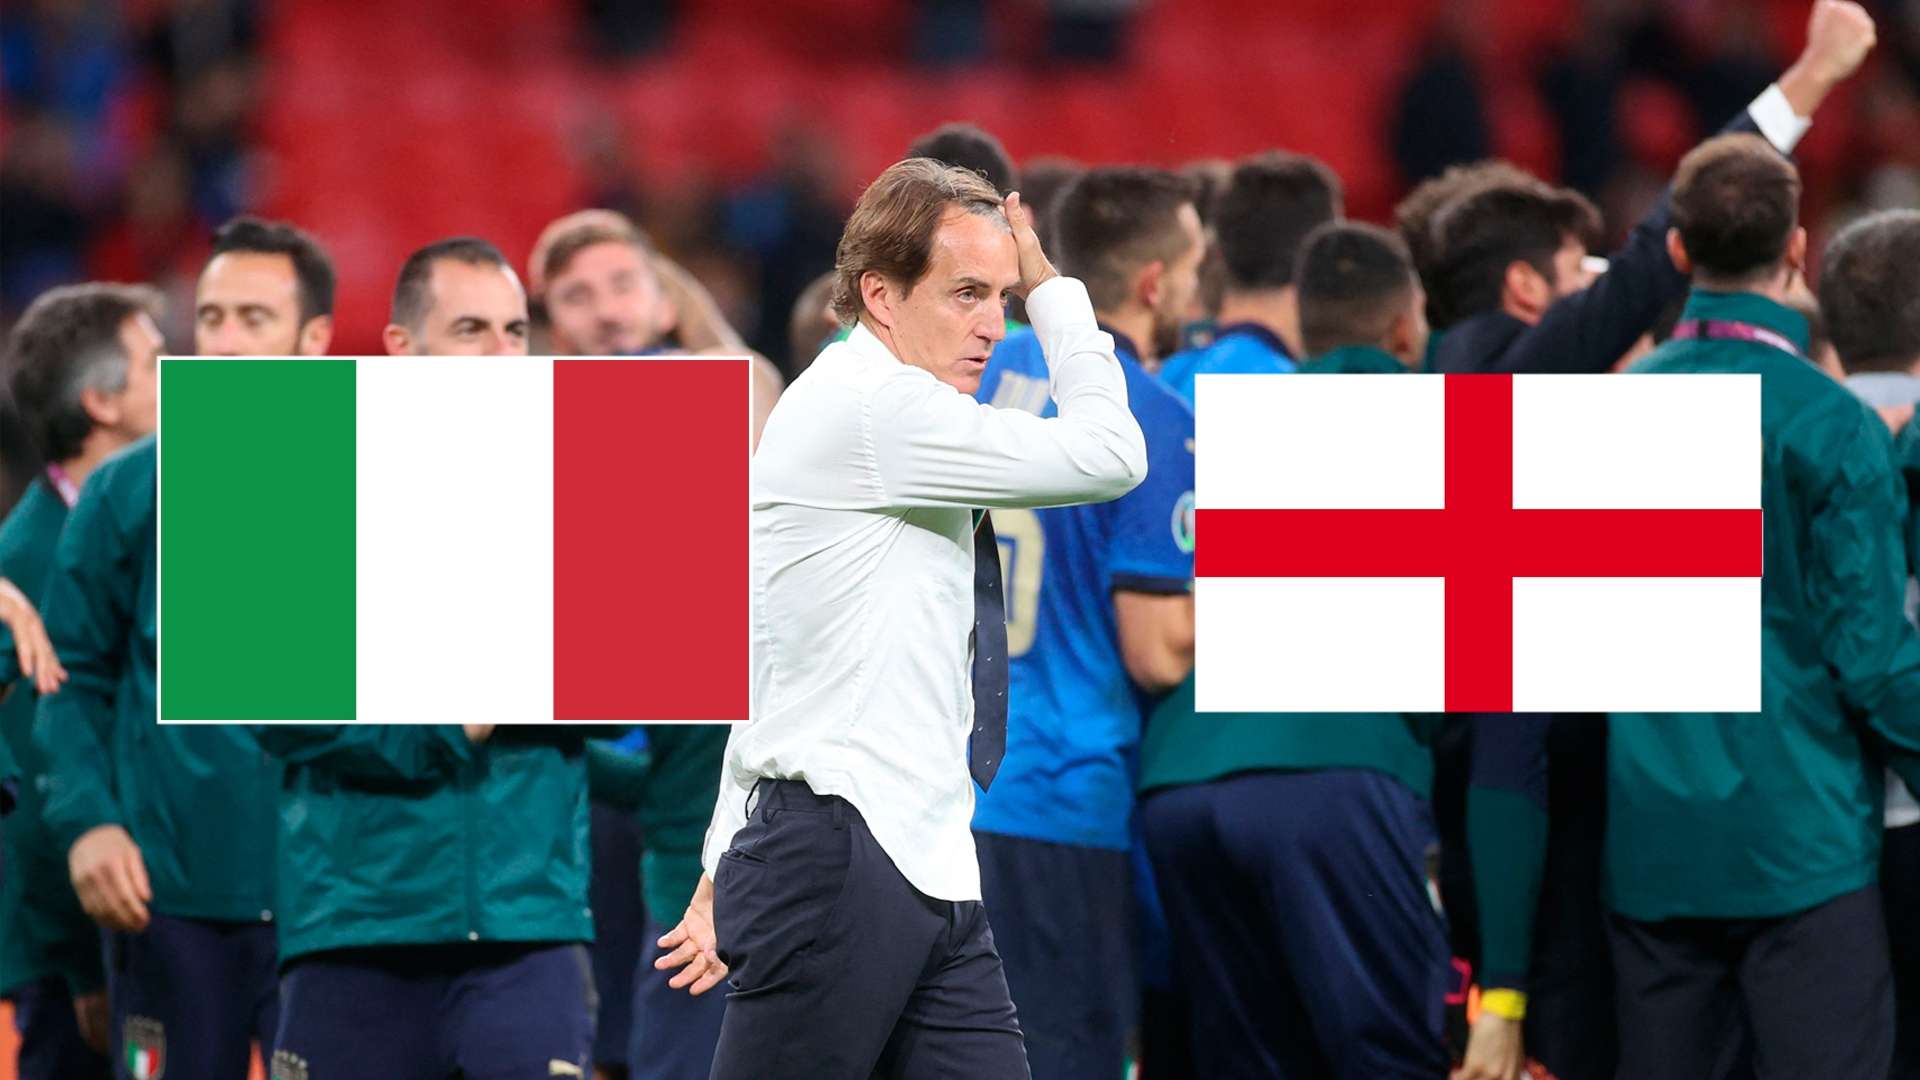 Italien England Fußball-em 2021 finale tv live-stream heute Live gfx